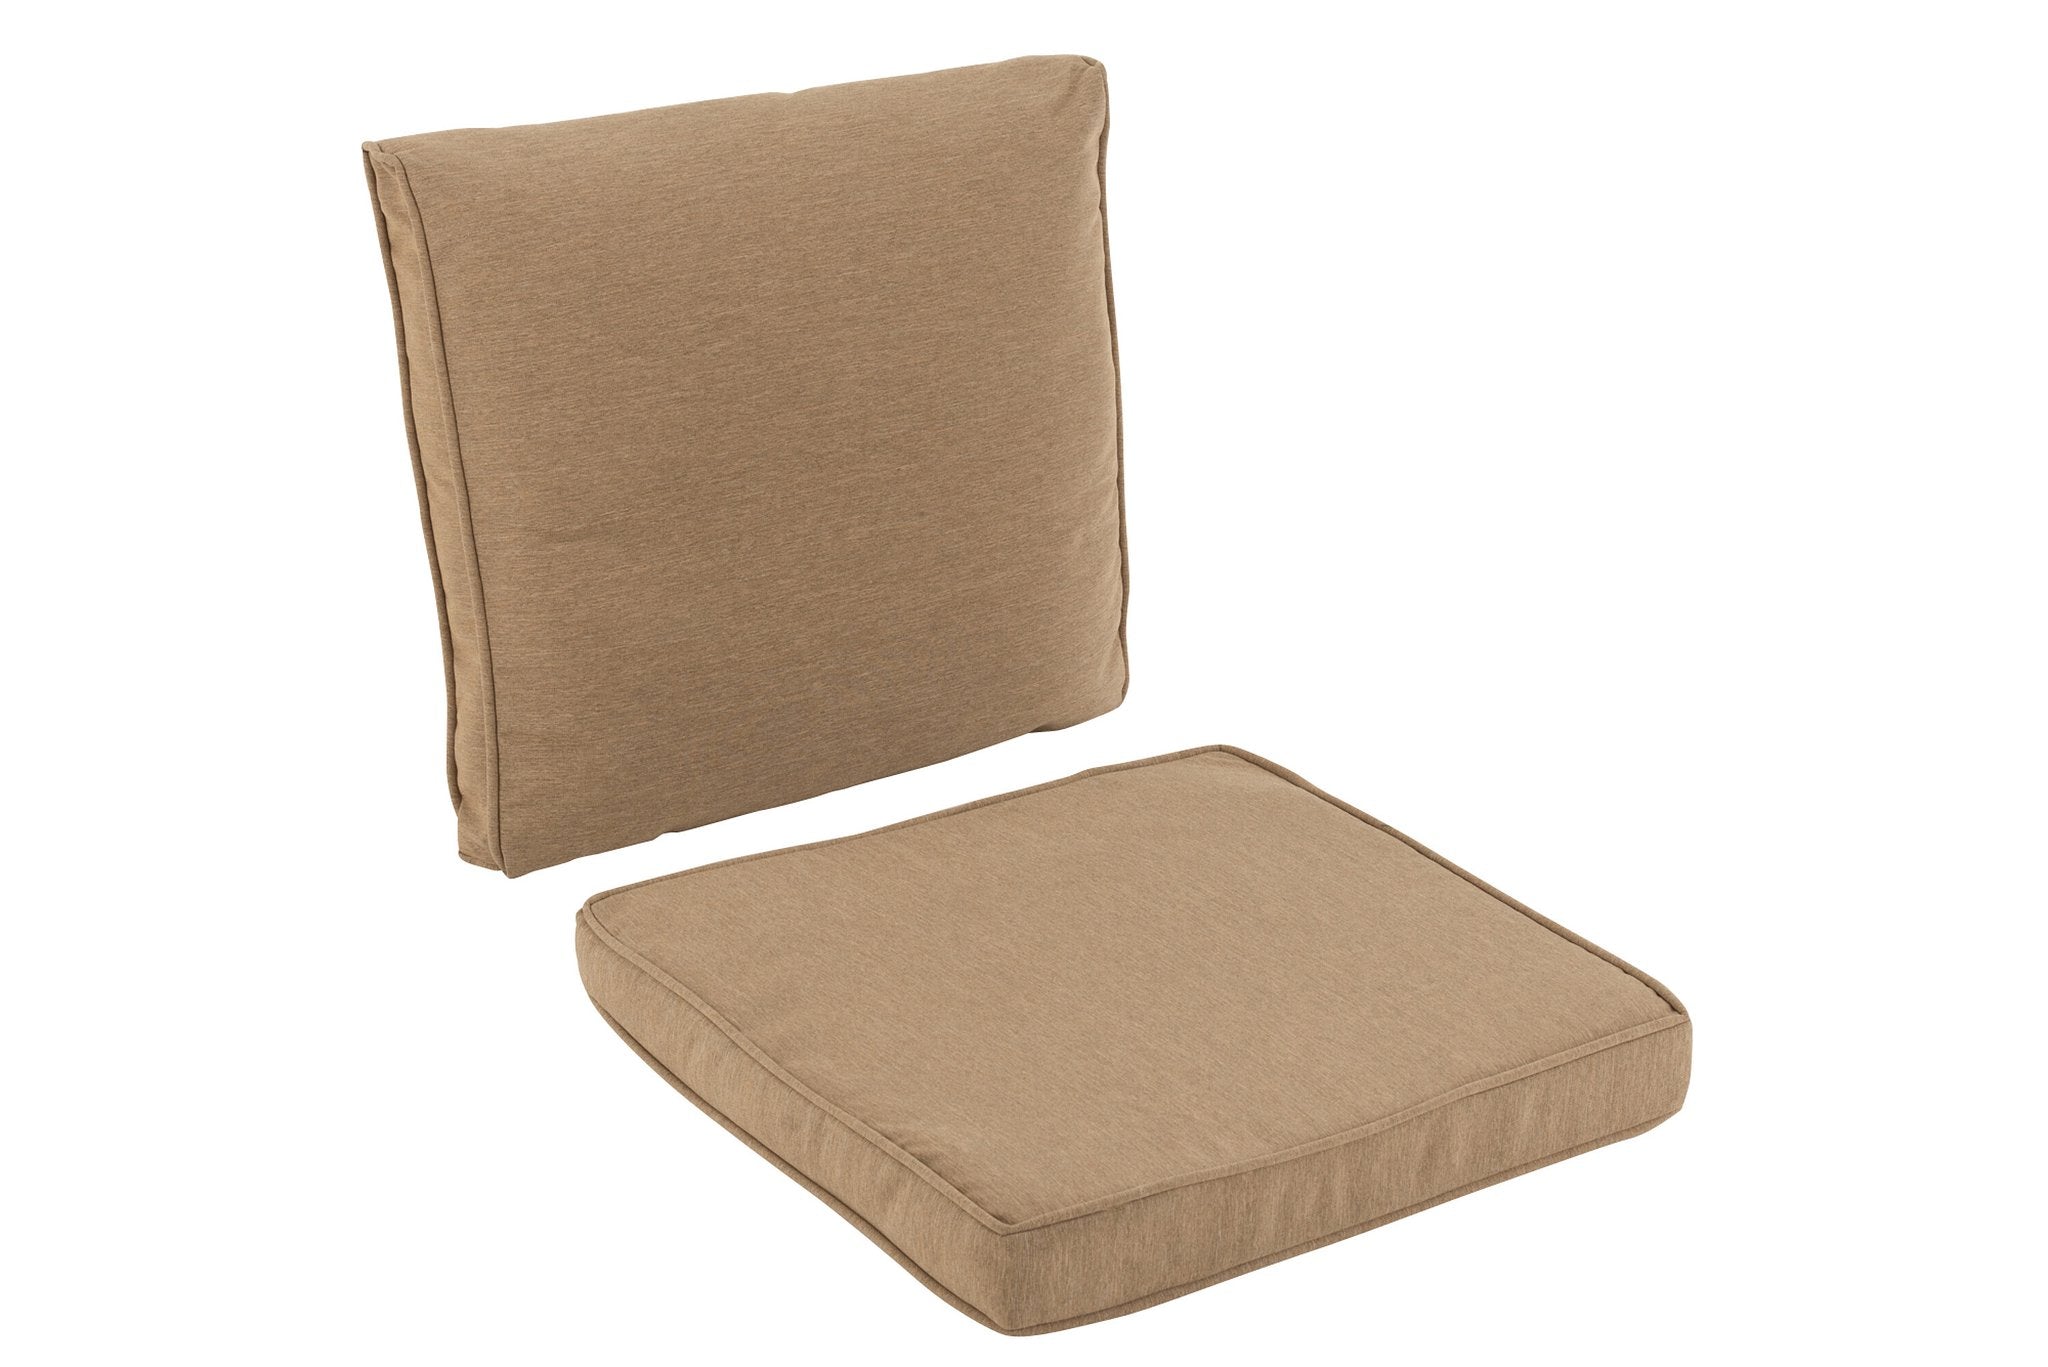 J-Line schommelstoel - metaal/textiel - beige/donkerbruin